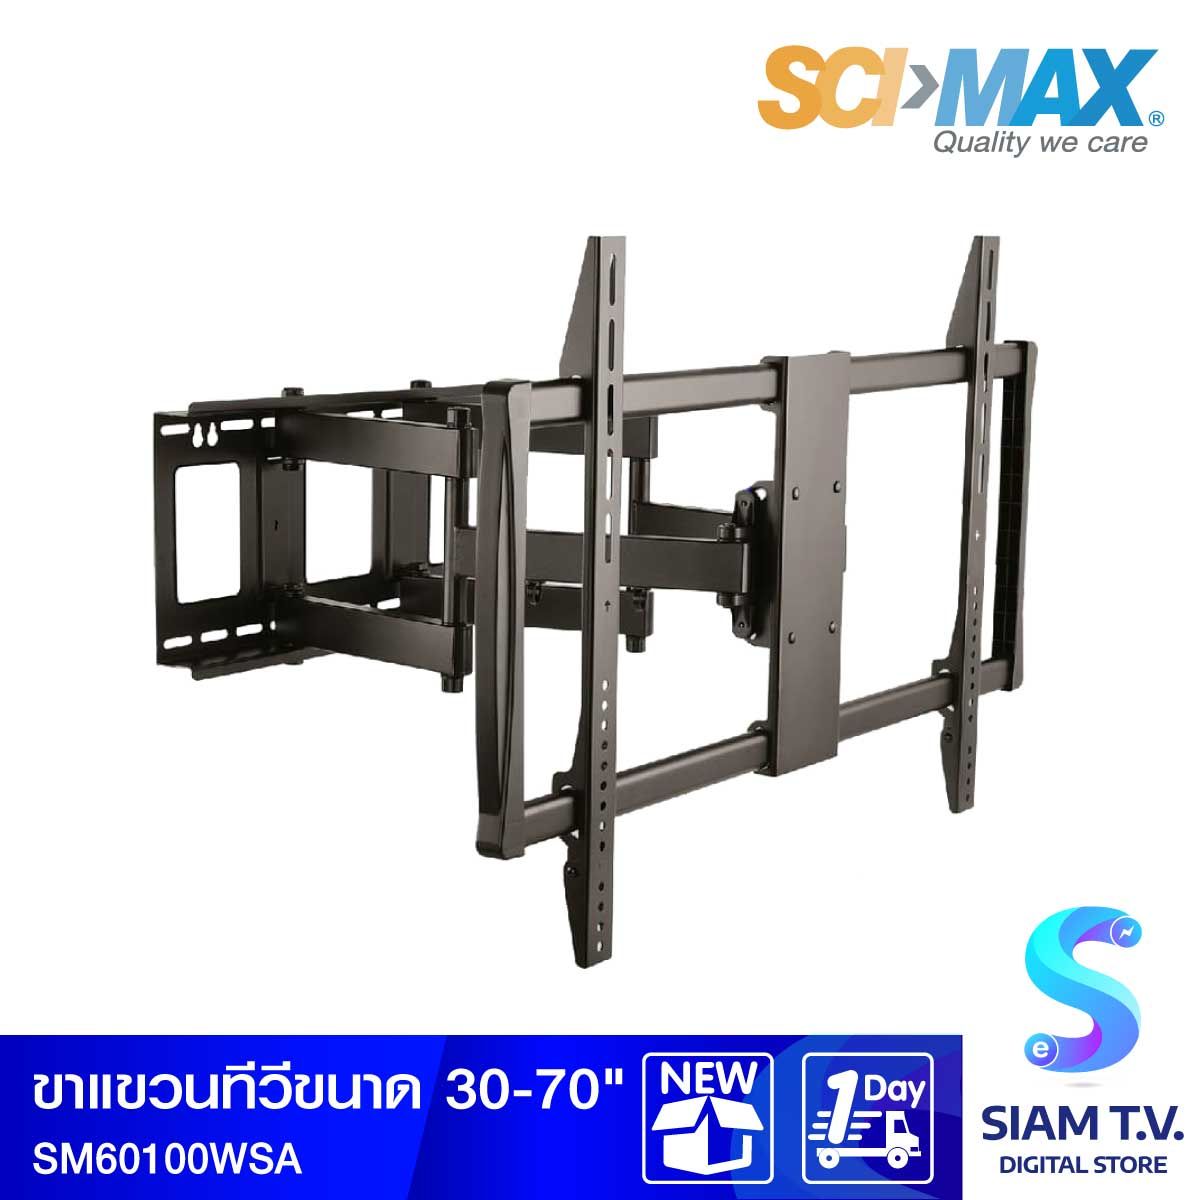 SCIMAX  ขาแขวนทีวีสำหรับยึดผนัง รุ่น SM60100WSA แบบปรับหมุนทุกทิศทาง รองรับทีวีขนาด 30-70 นิ้ว